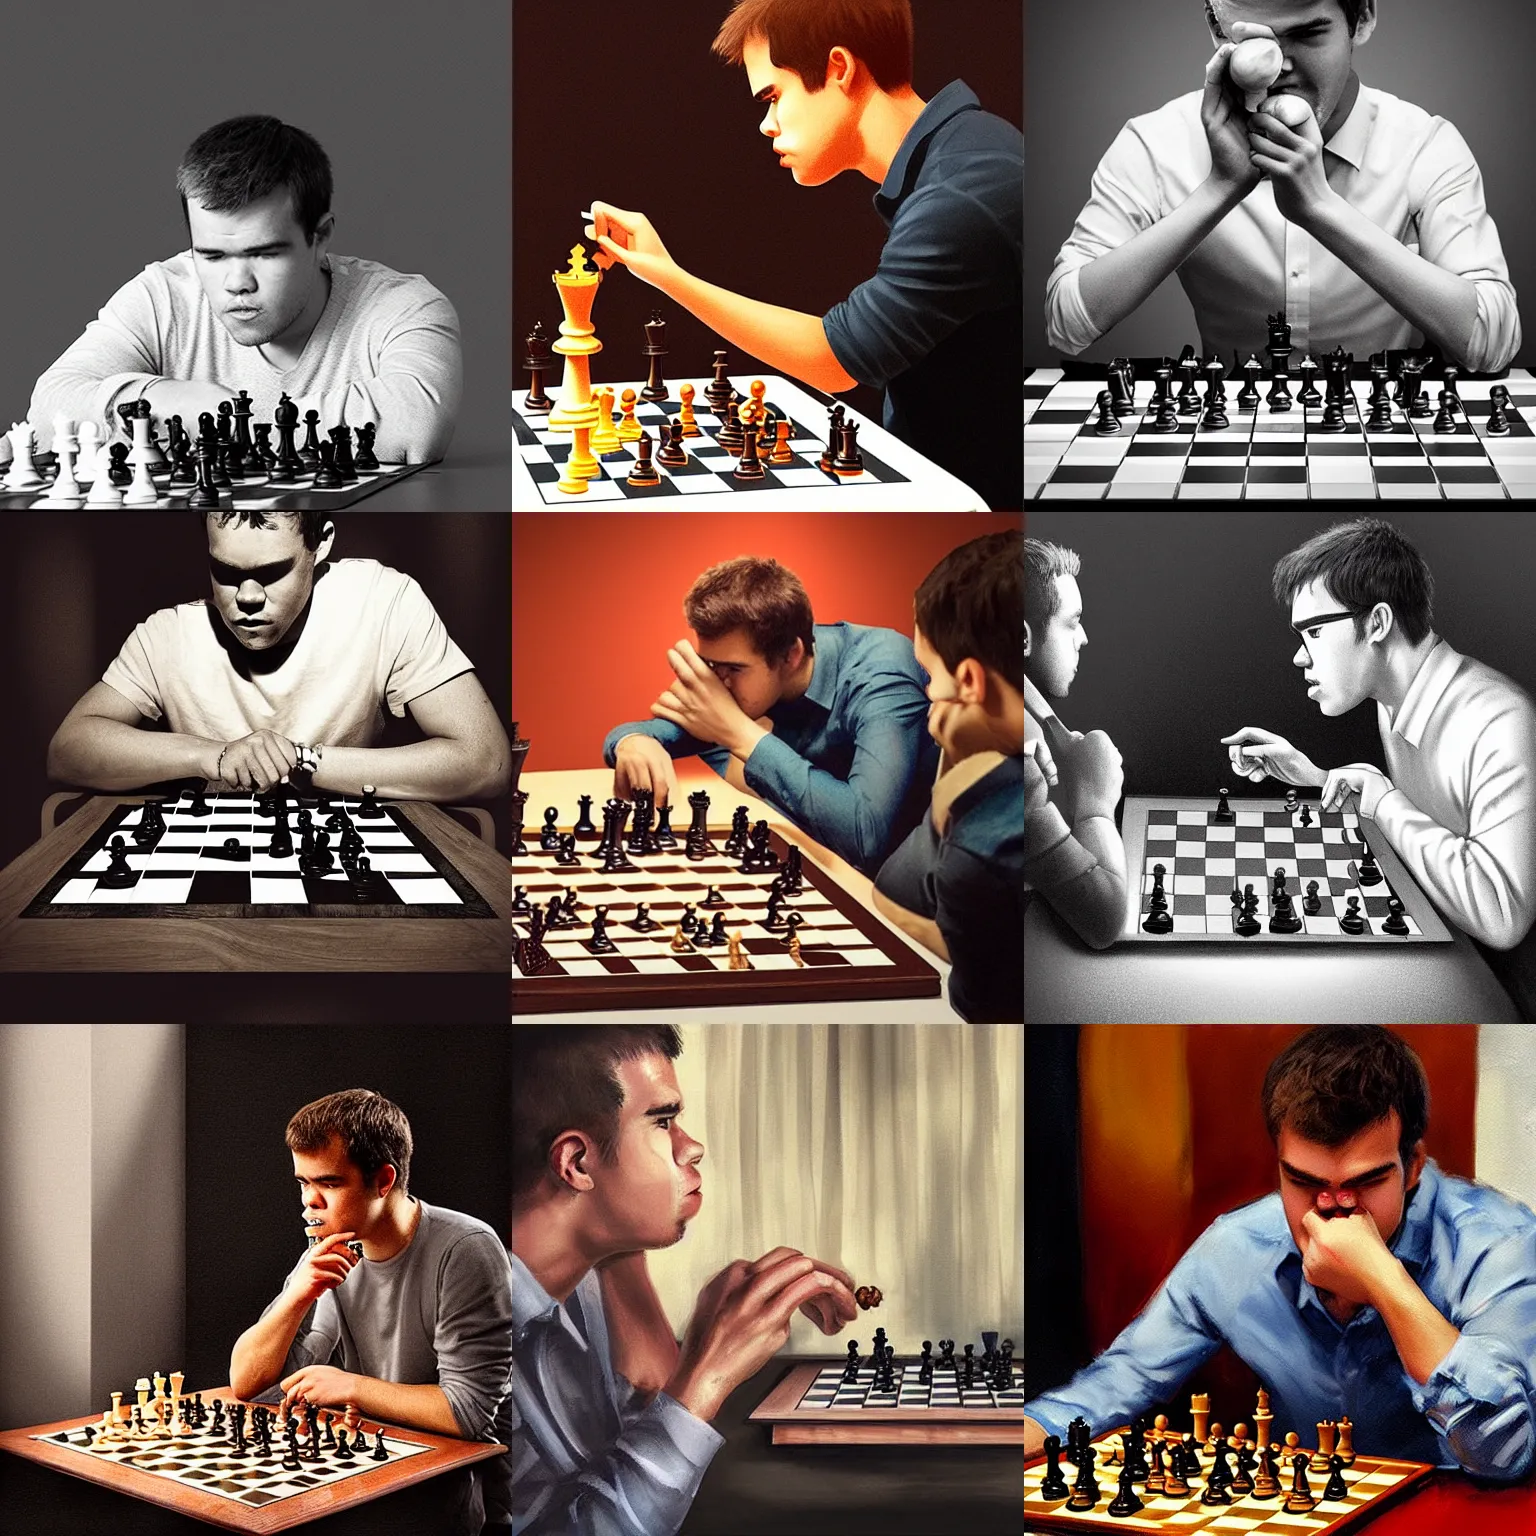 Prompt: “Magnus Carlsen eating a chess pawn at dinner, 4k, trending on artstation”